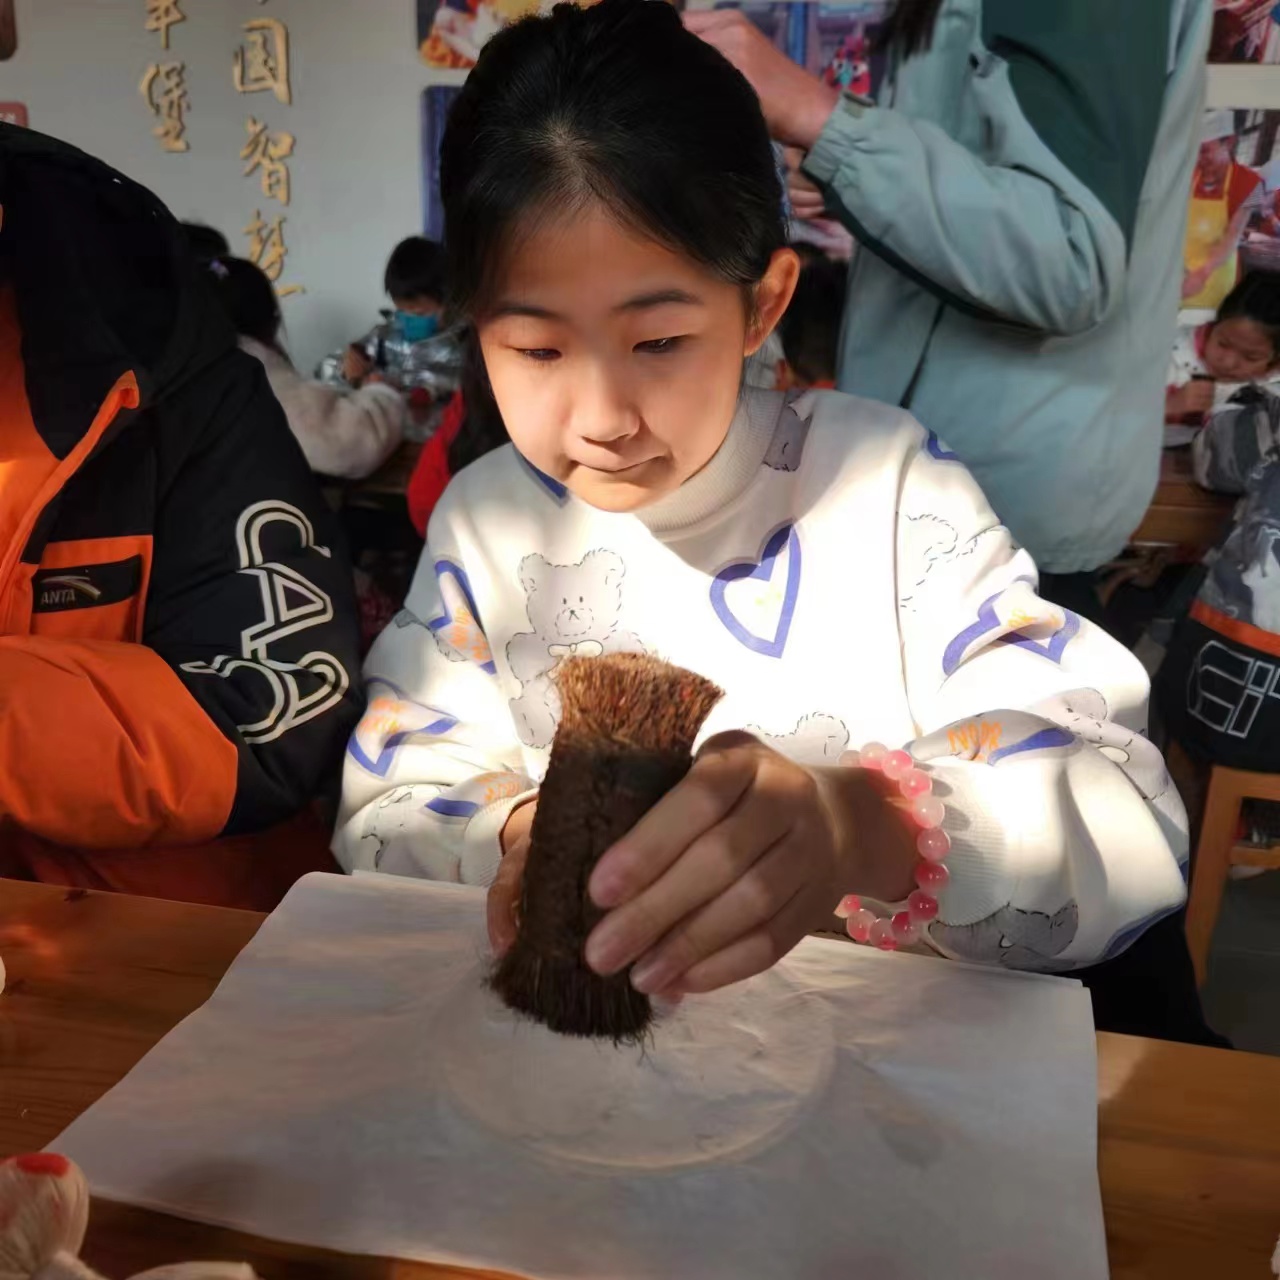 在张壁古堡研学的“堡贝”学习“朱砂拓福”  摄影 张桦